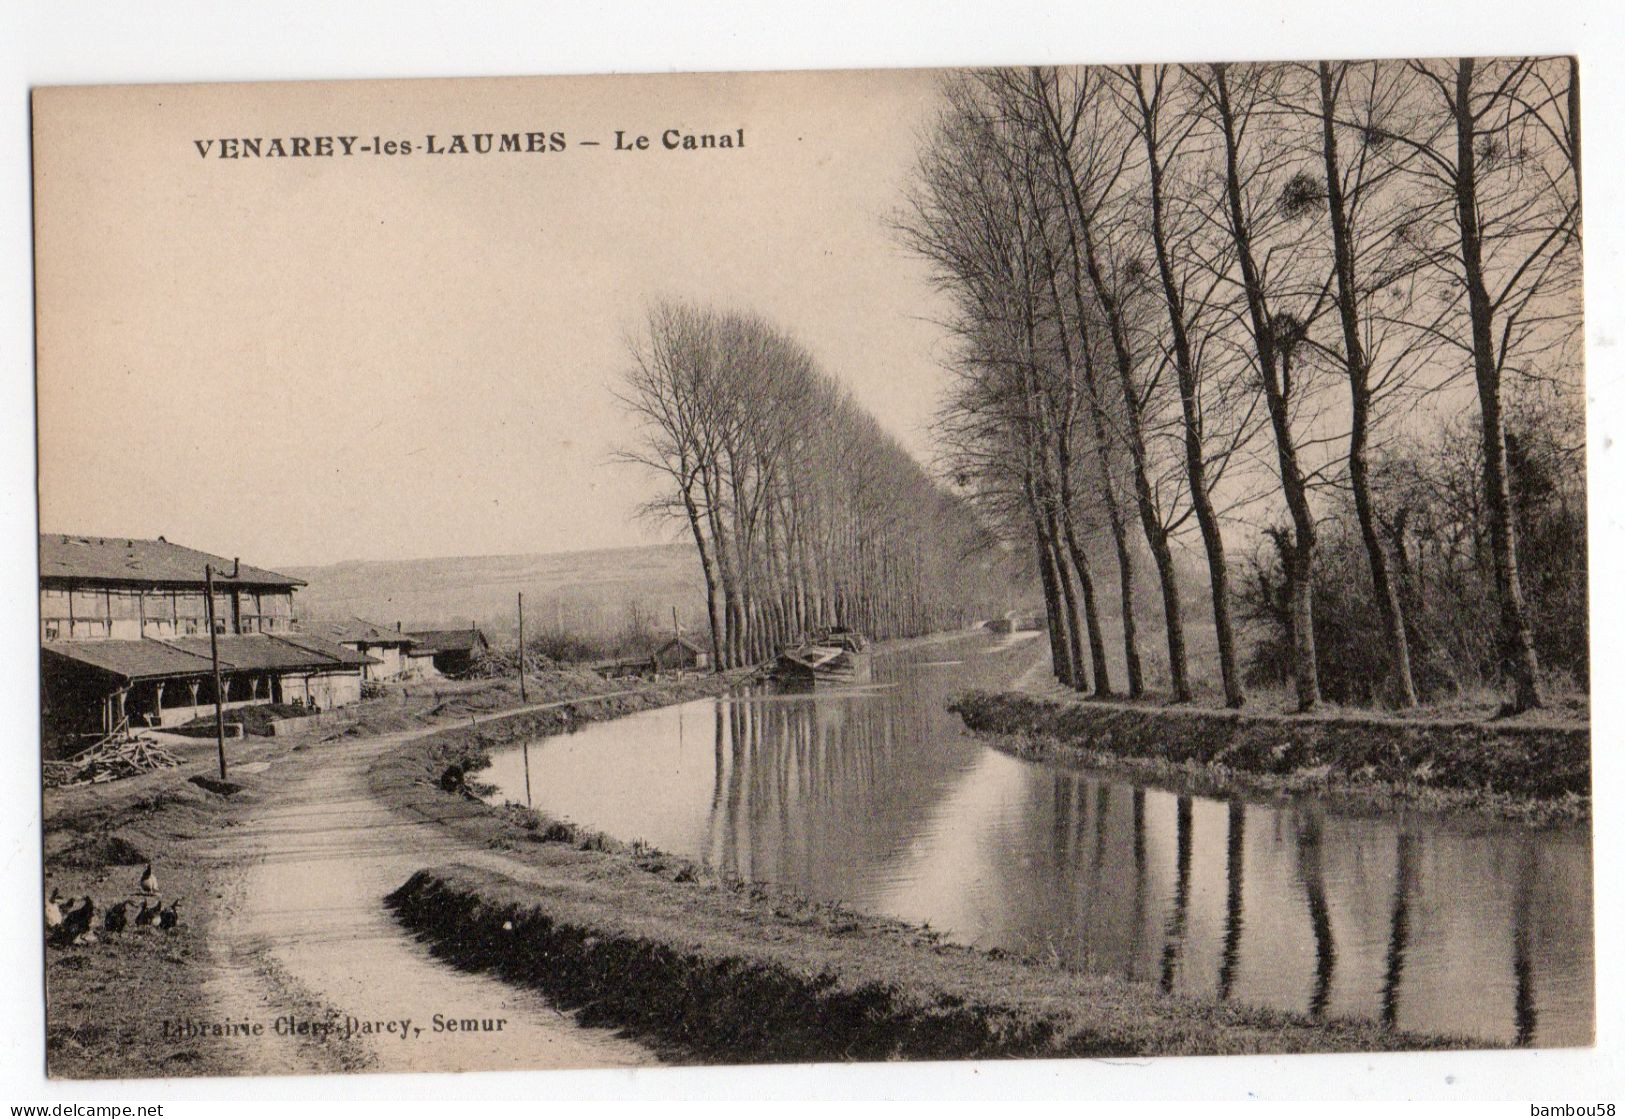 VENAREY LES LAUMES * COTE D'OR * LE CANAL * Librairie Clerc-Darcy, Semur - Venarey Les Laumes